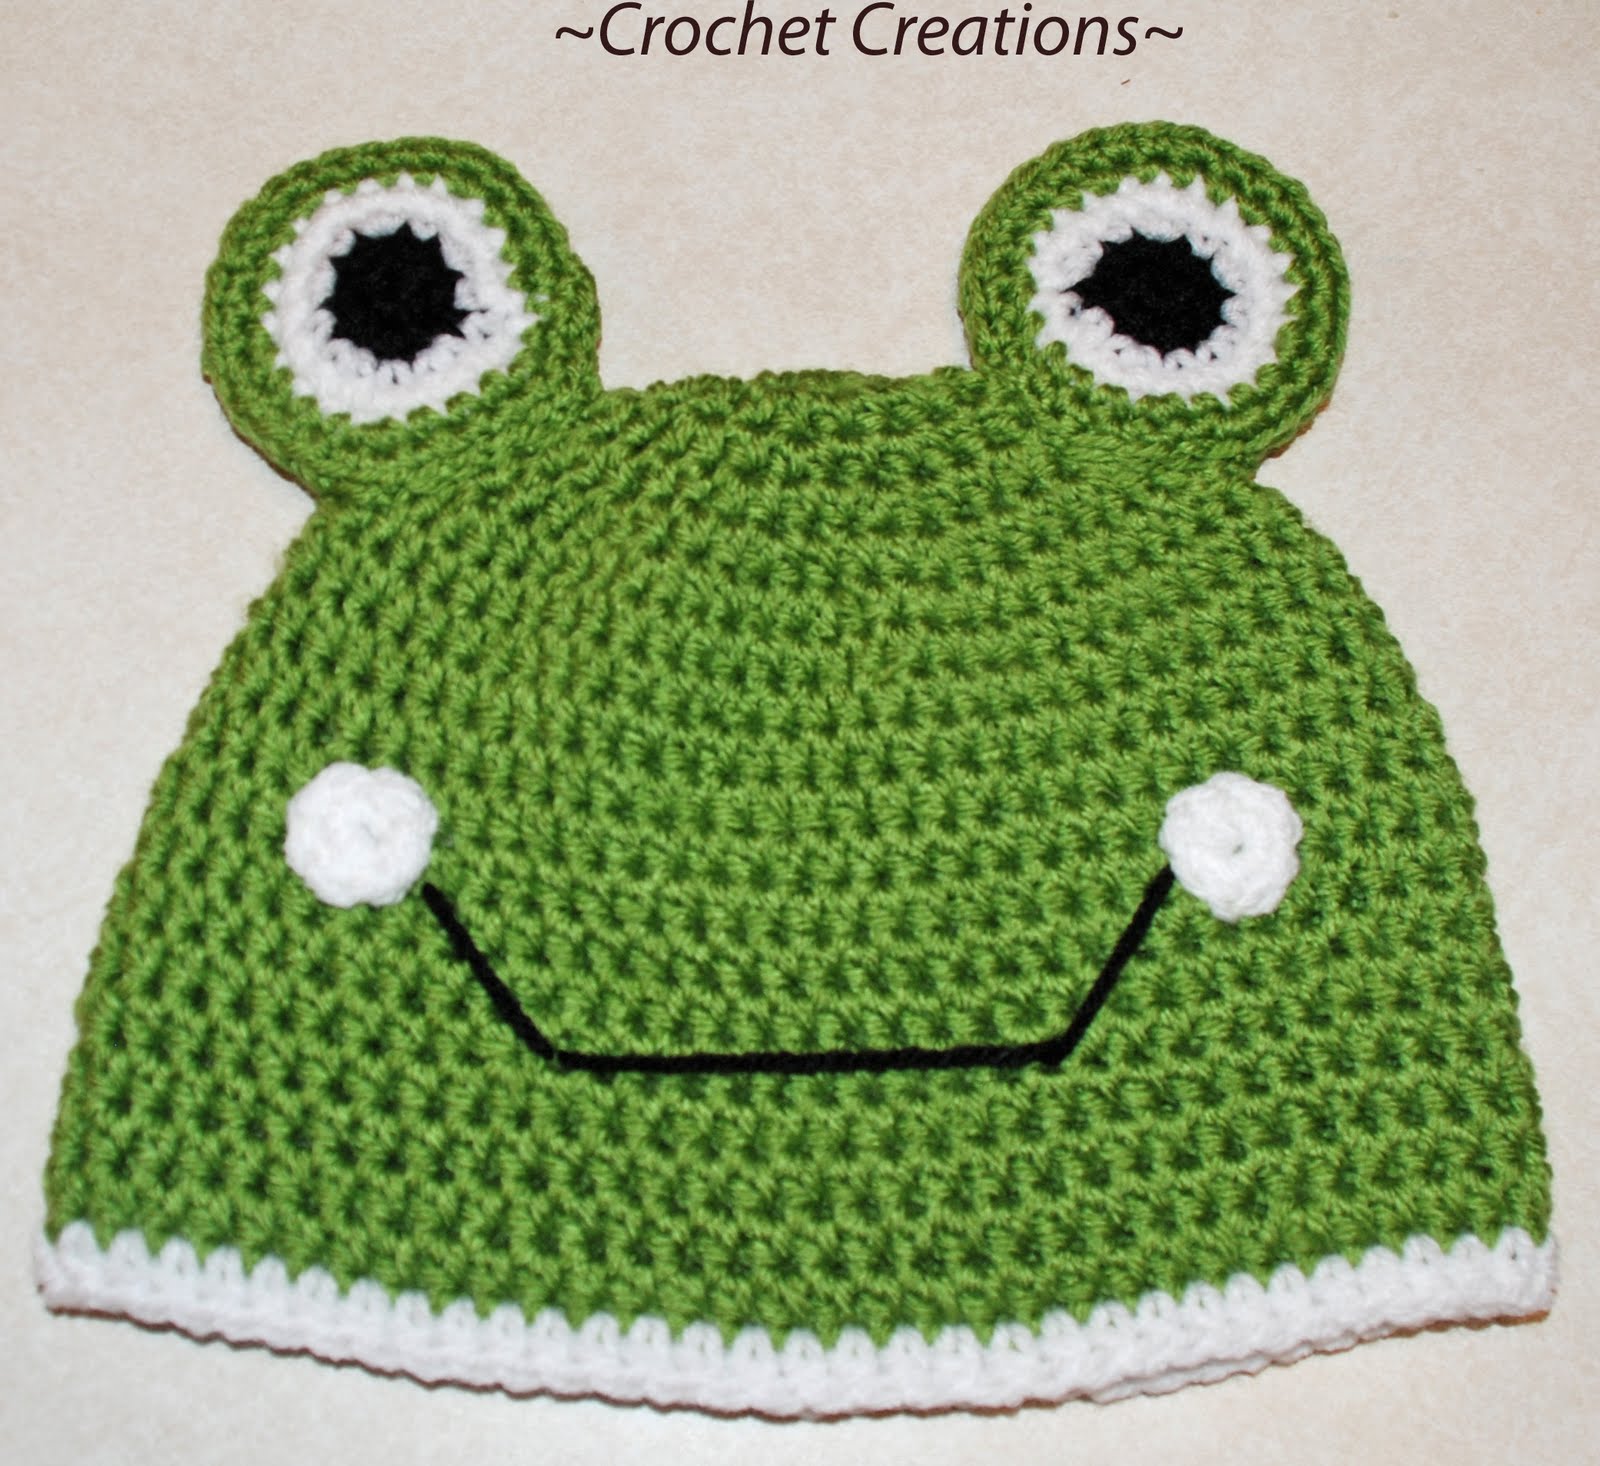 free crochet pattern for little boys hat free crochet pattern for